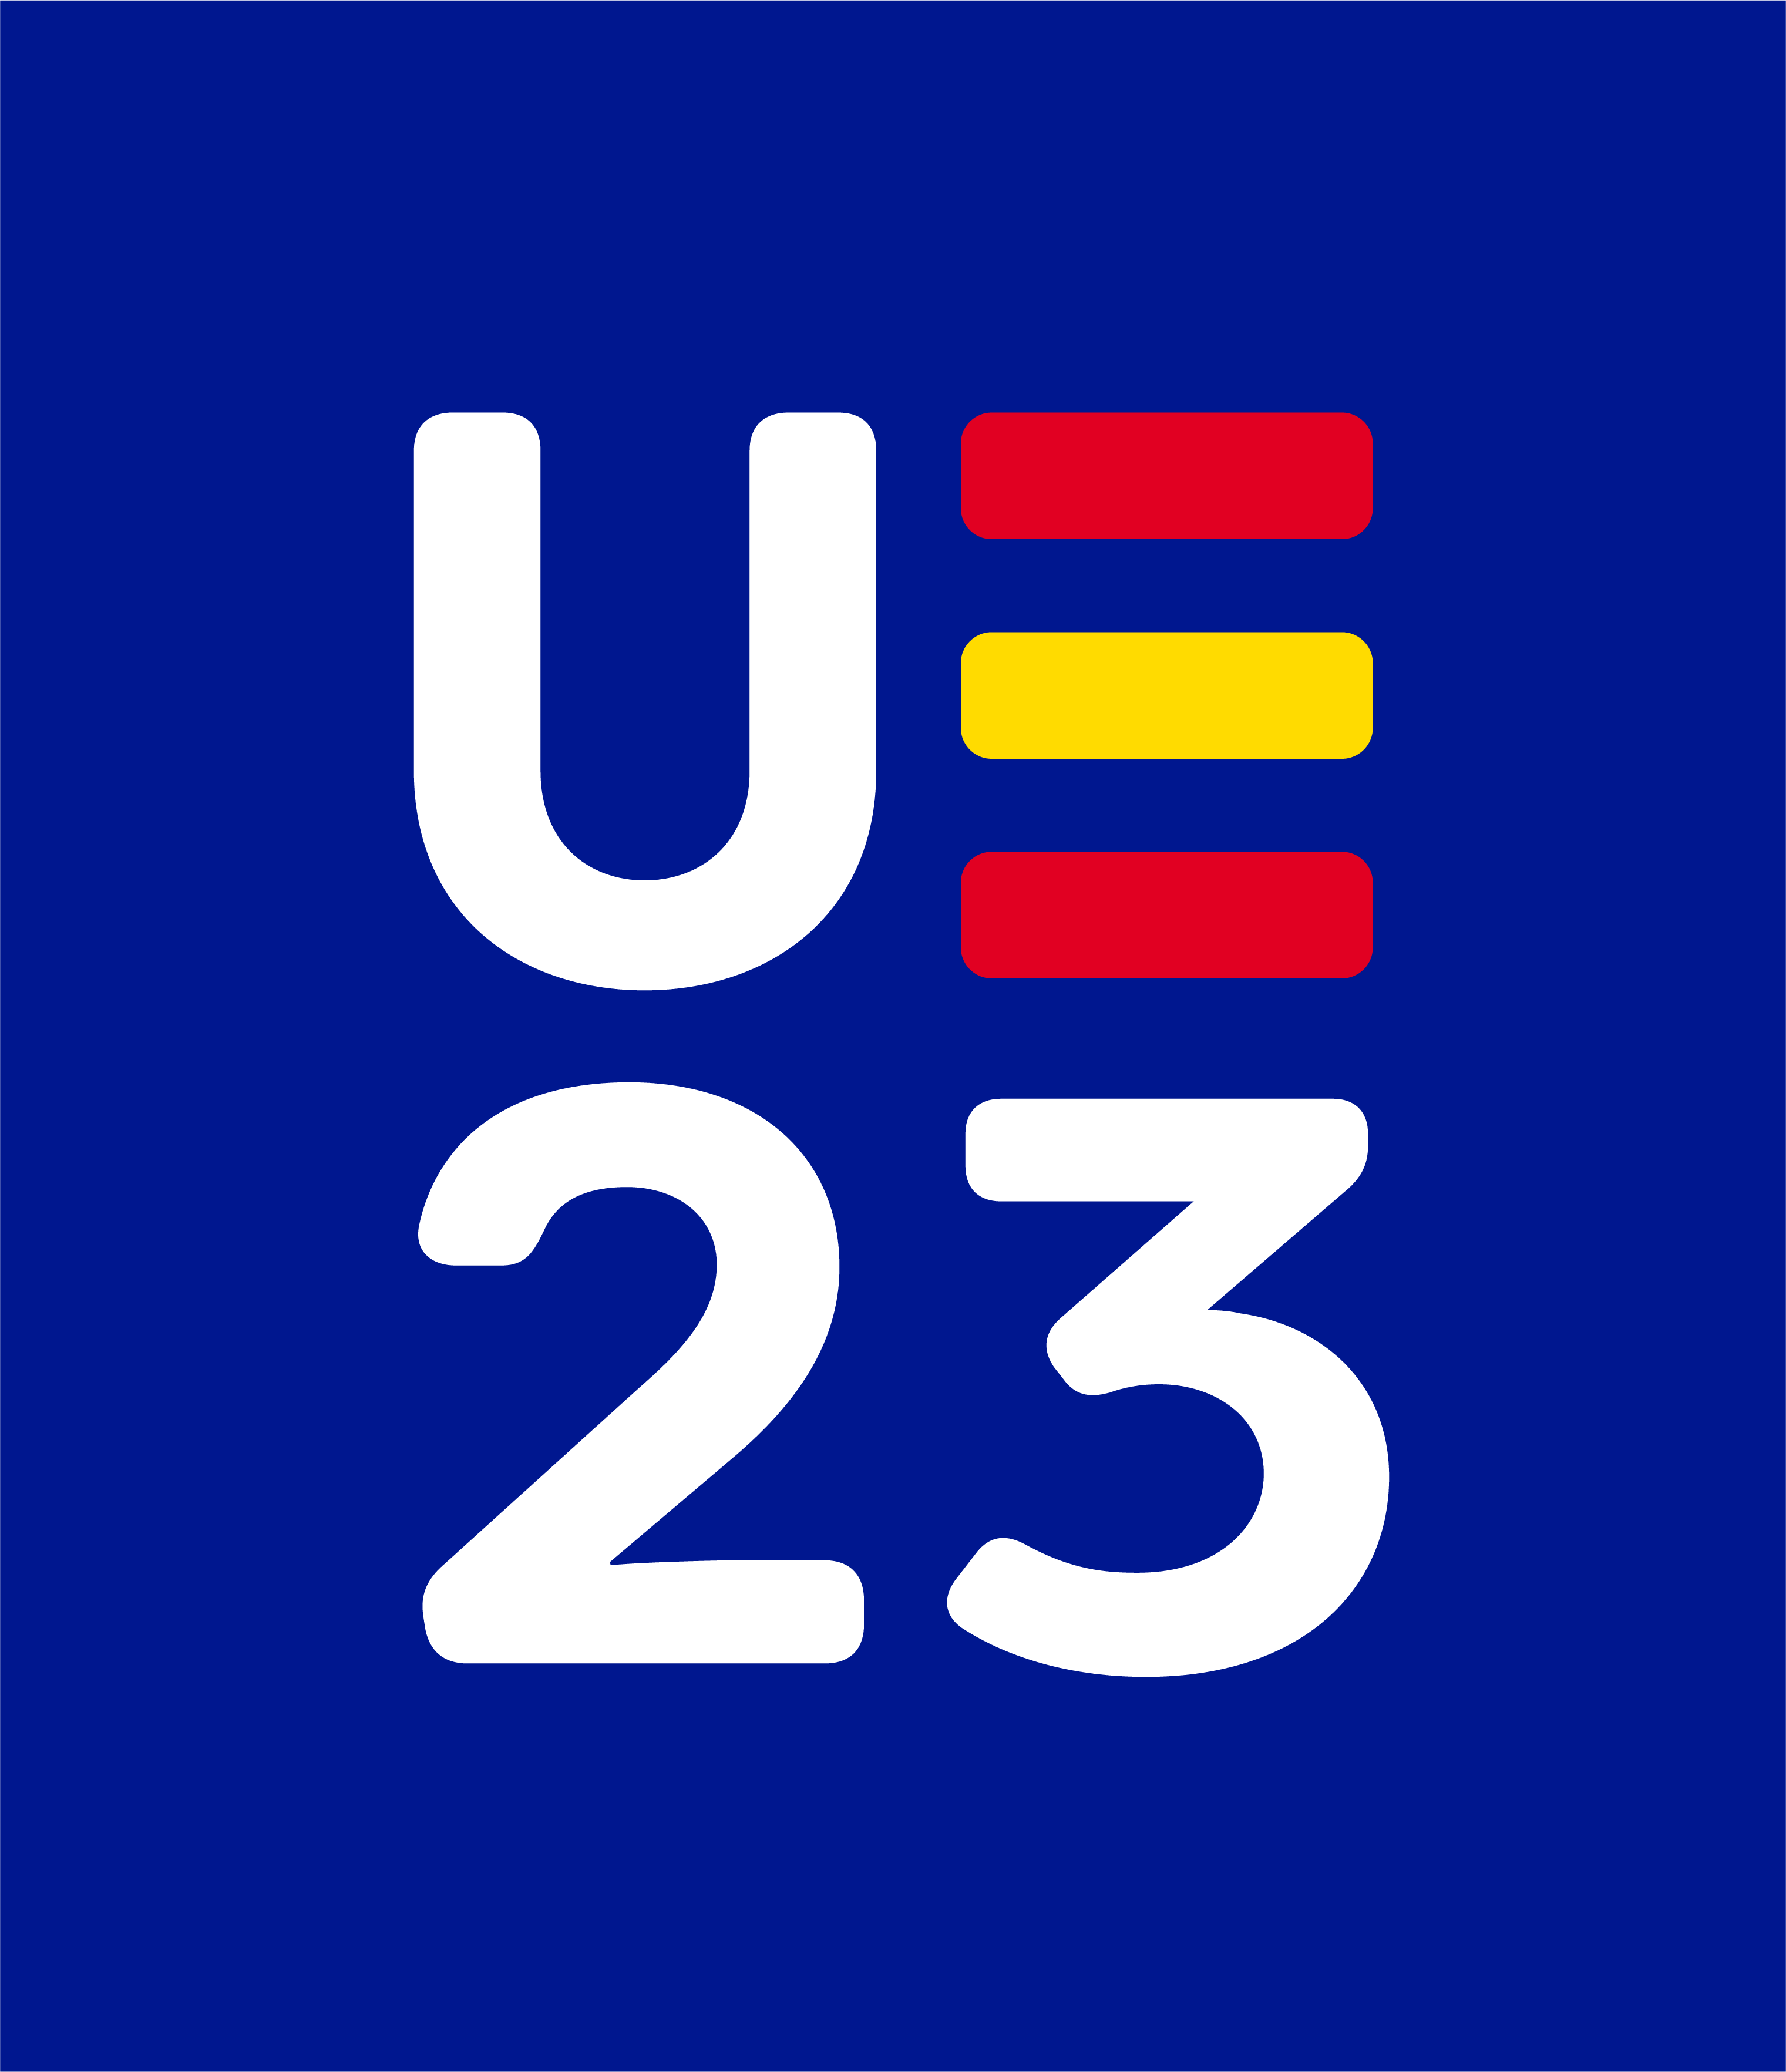 Acceso a web informativa sobre la Presidencia Española de la Unión Europea 2023